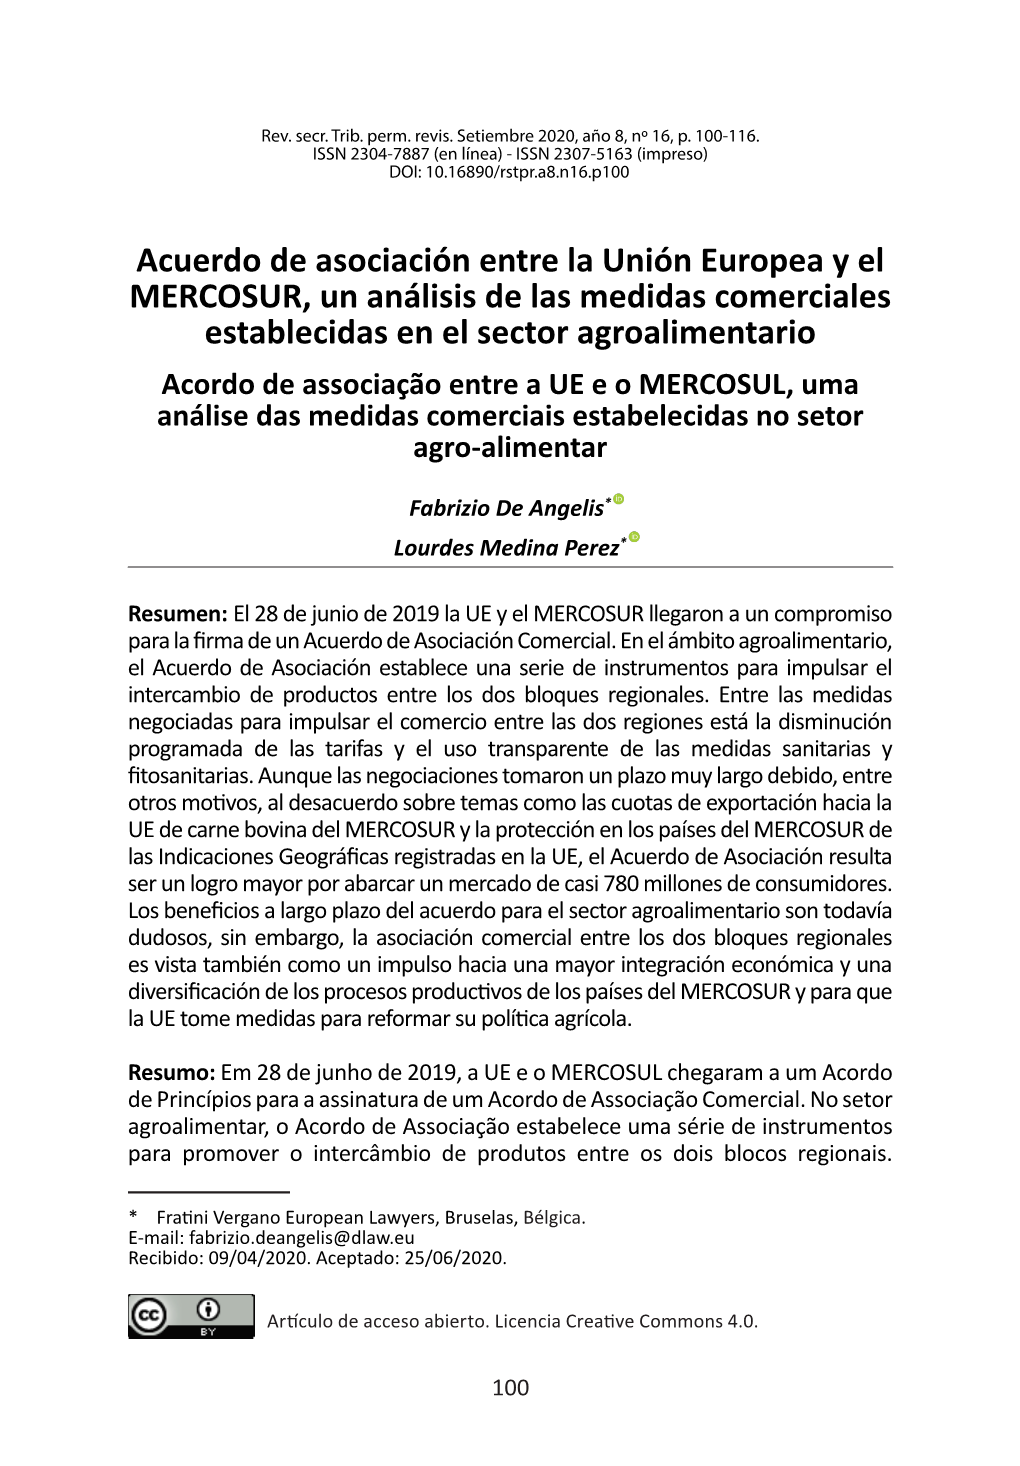 Acuerdo De Asociación Entre La Unión Europea Y El MERCOSUR, Un Análisis De Las Medidas Comerciales Establecidas En El Sector